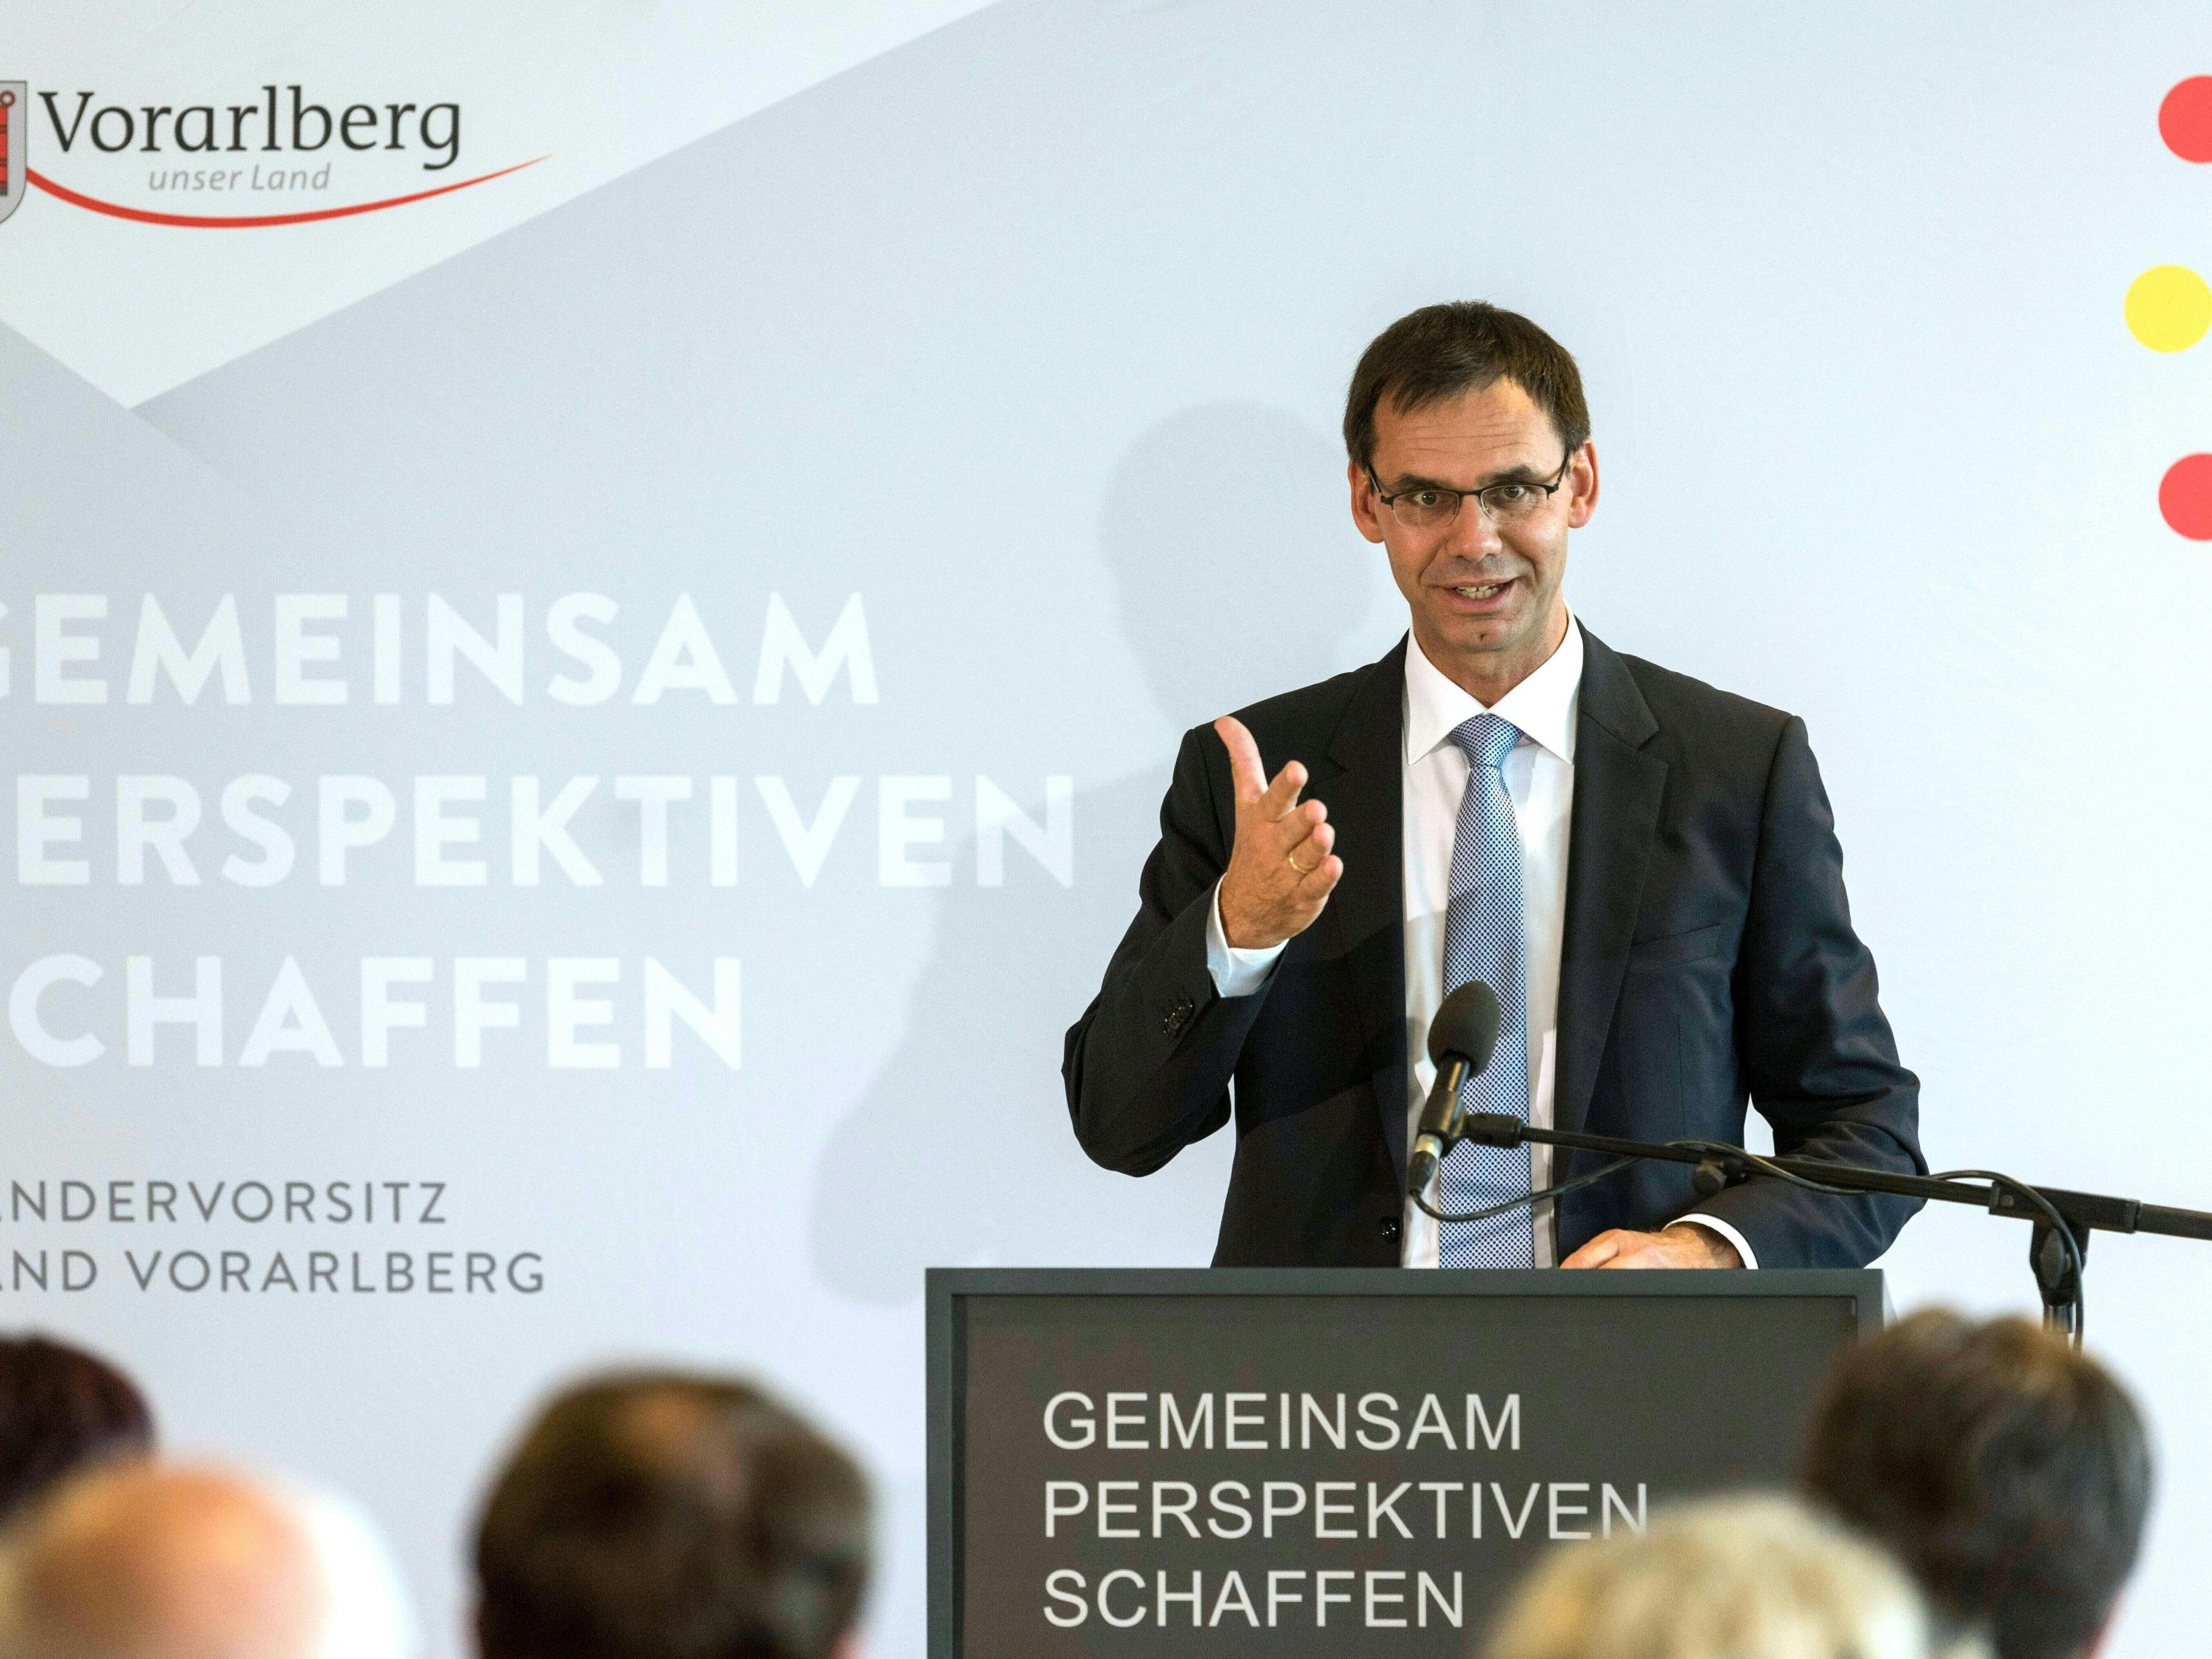 Der Vorarlberger Landeshauptmann Markus Wallner (ÖVP) ist derzeit Vorsitzender der Landeshauptleutekonferenz.